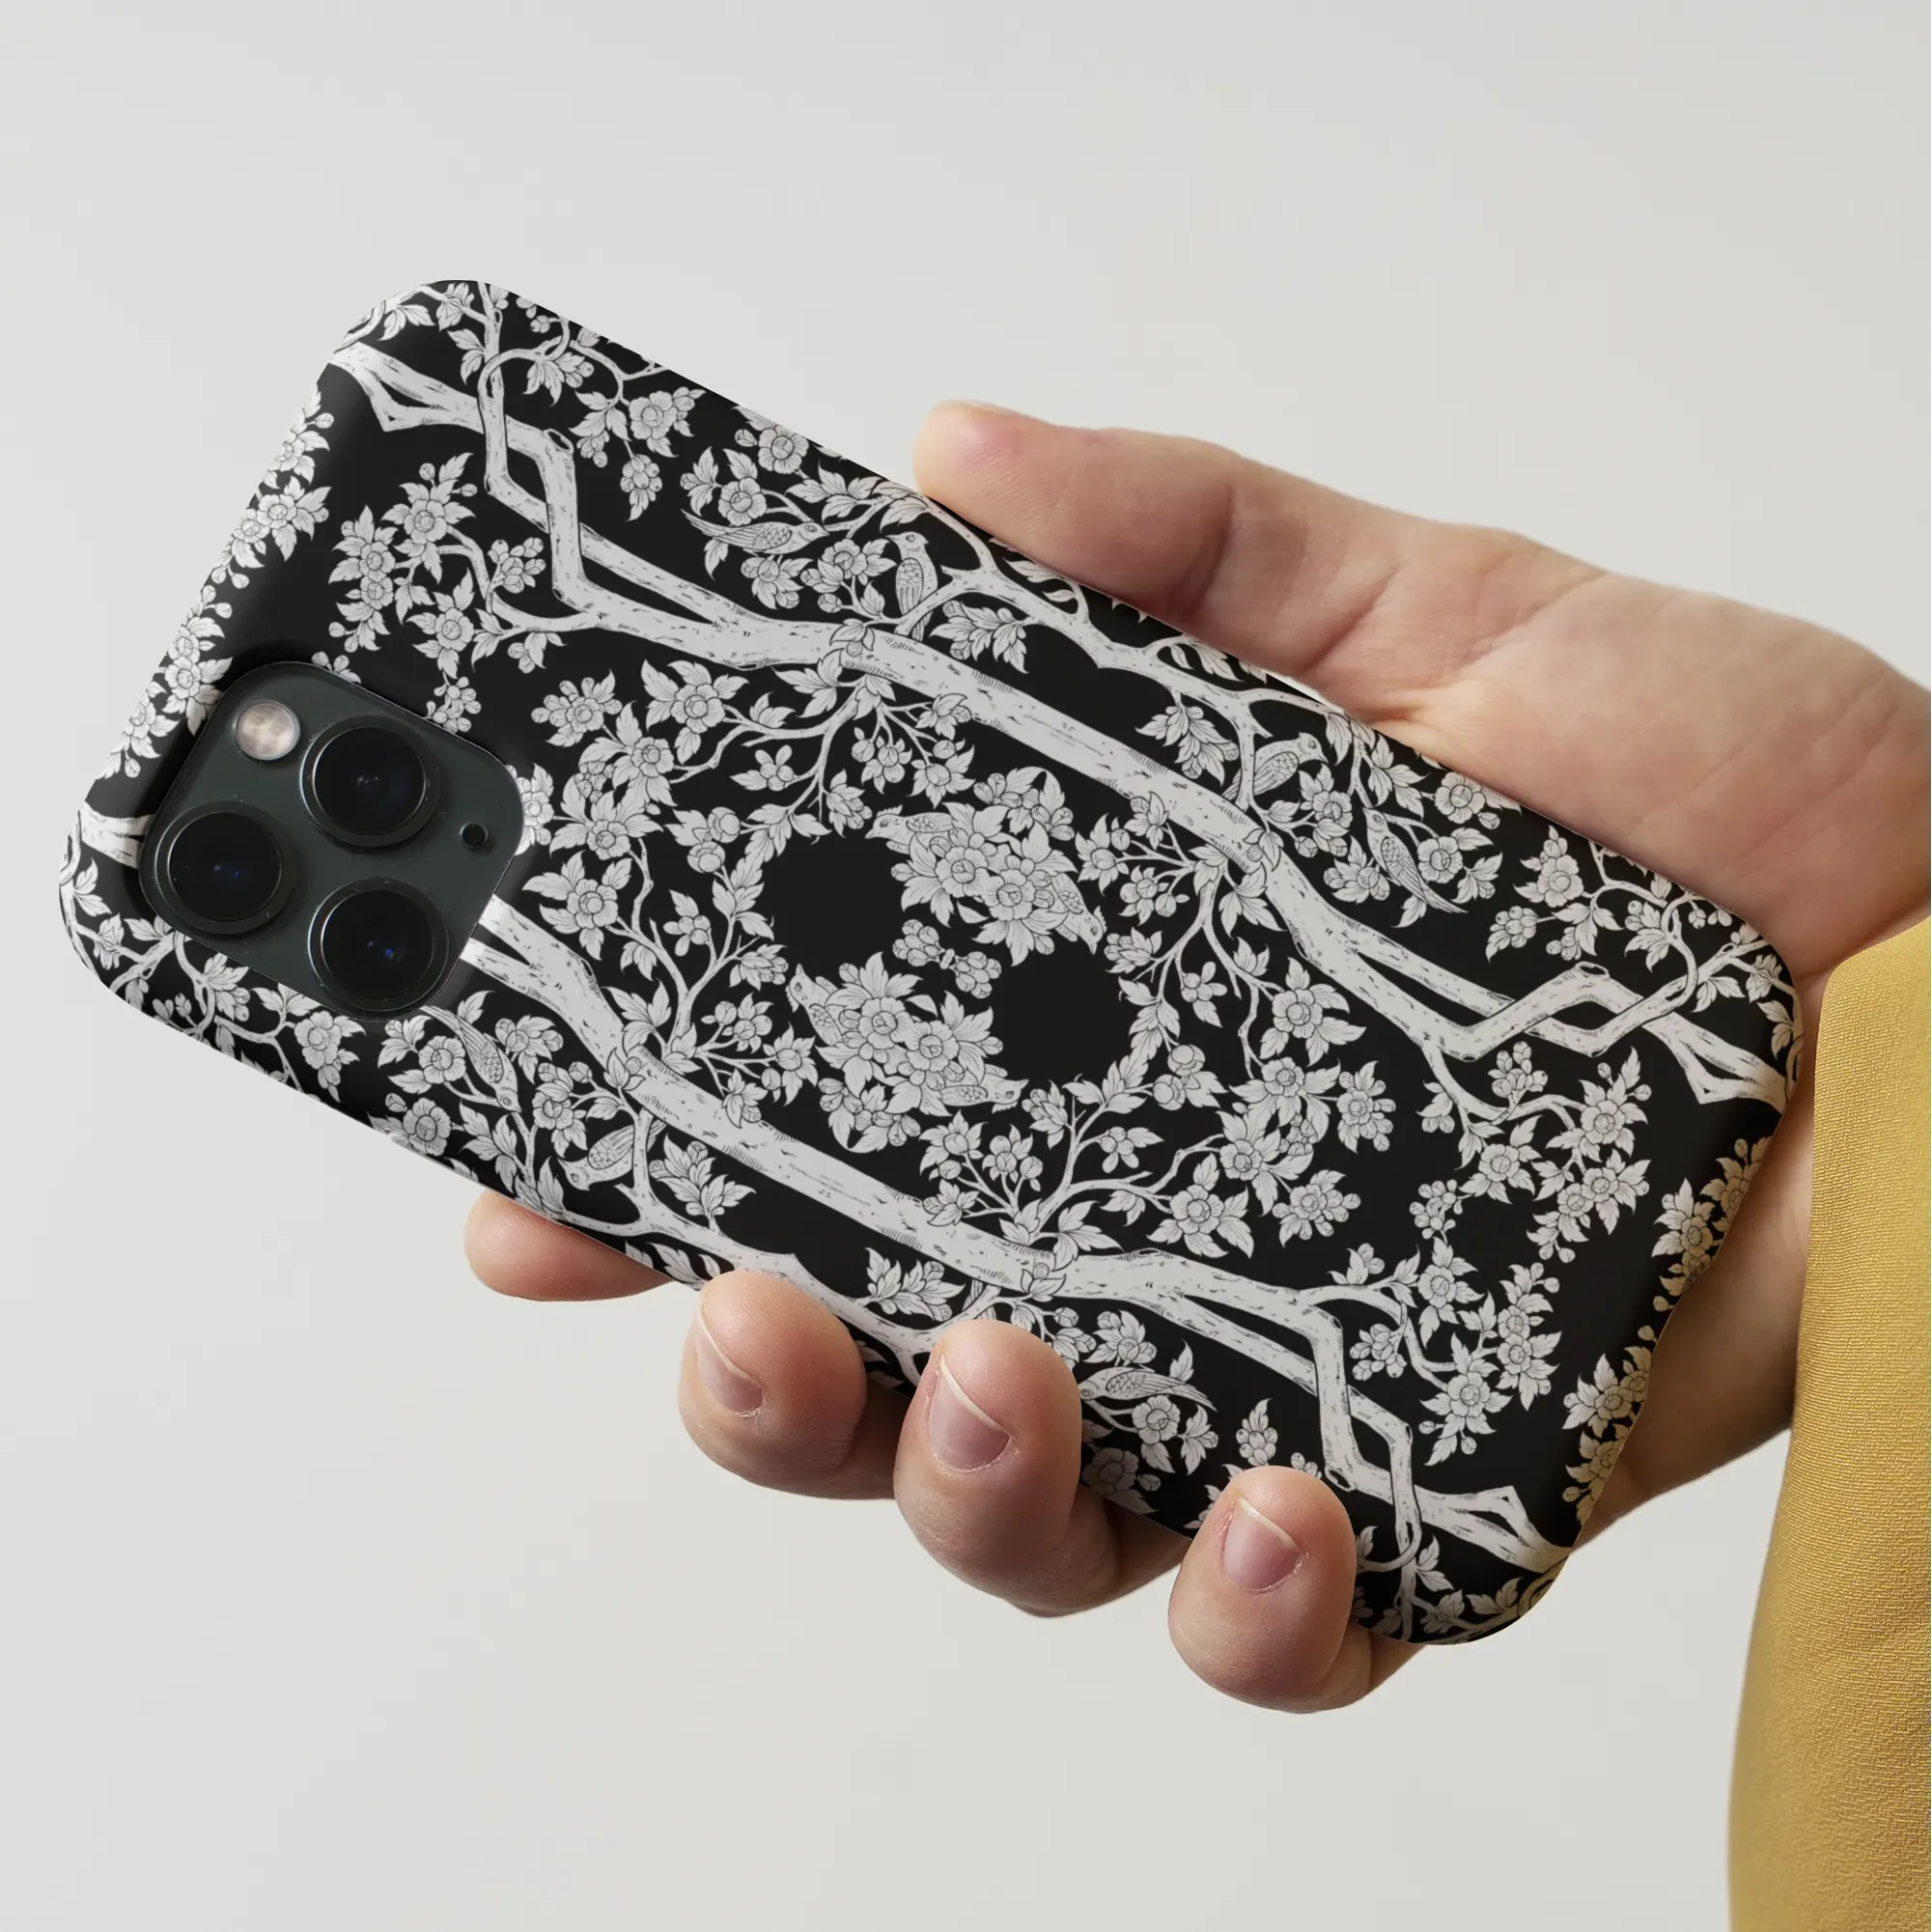 Aviary Black Aesthetic Pattern Art Phone Case - Mobile Phone Cases - Aesthetic Art